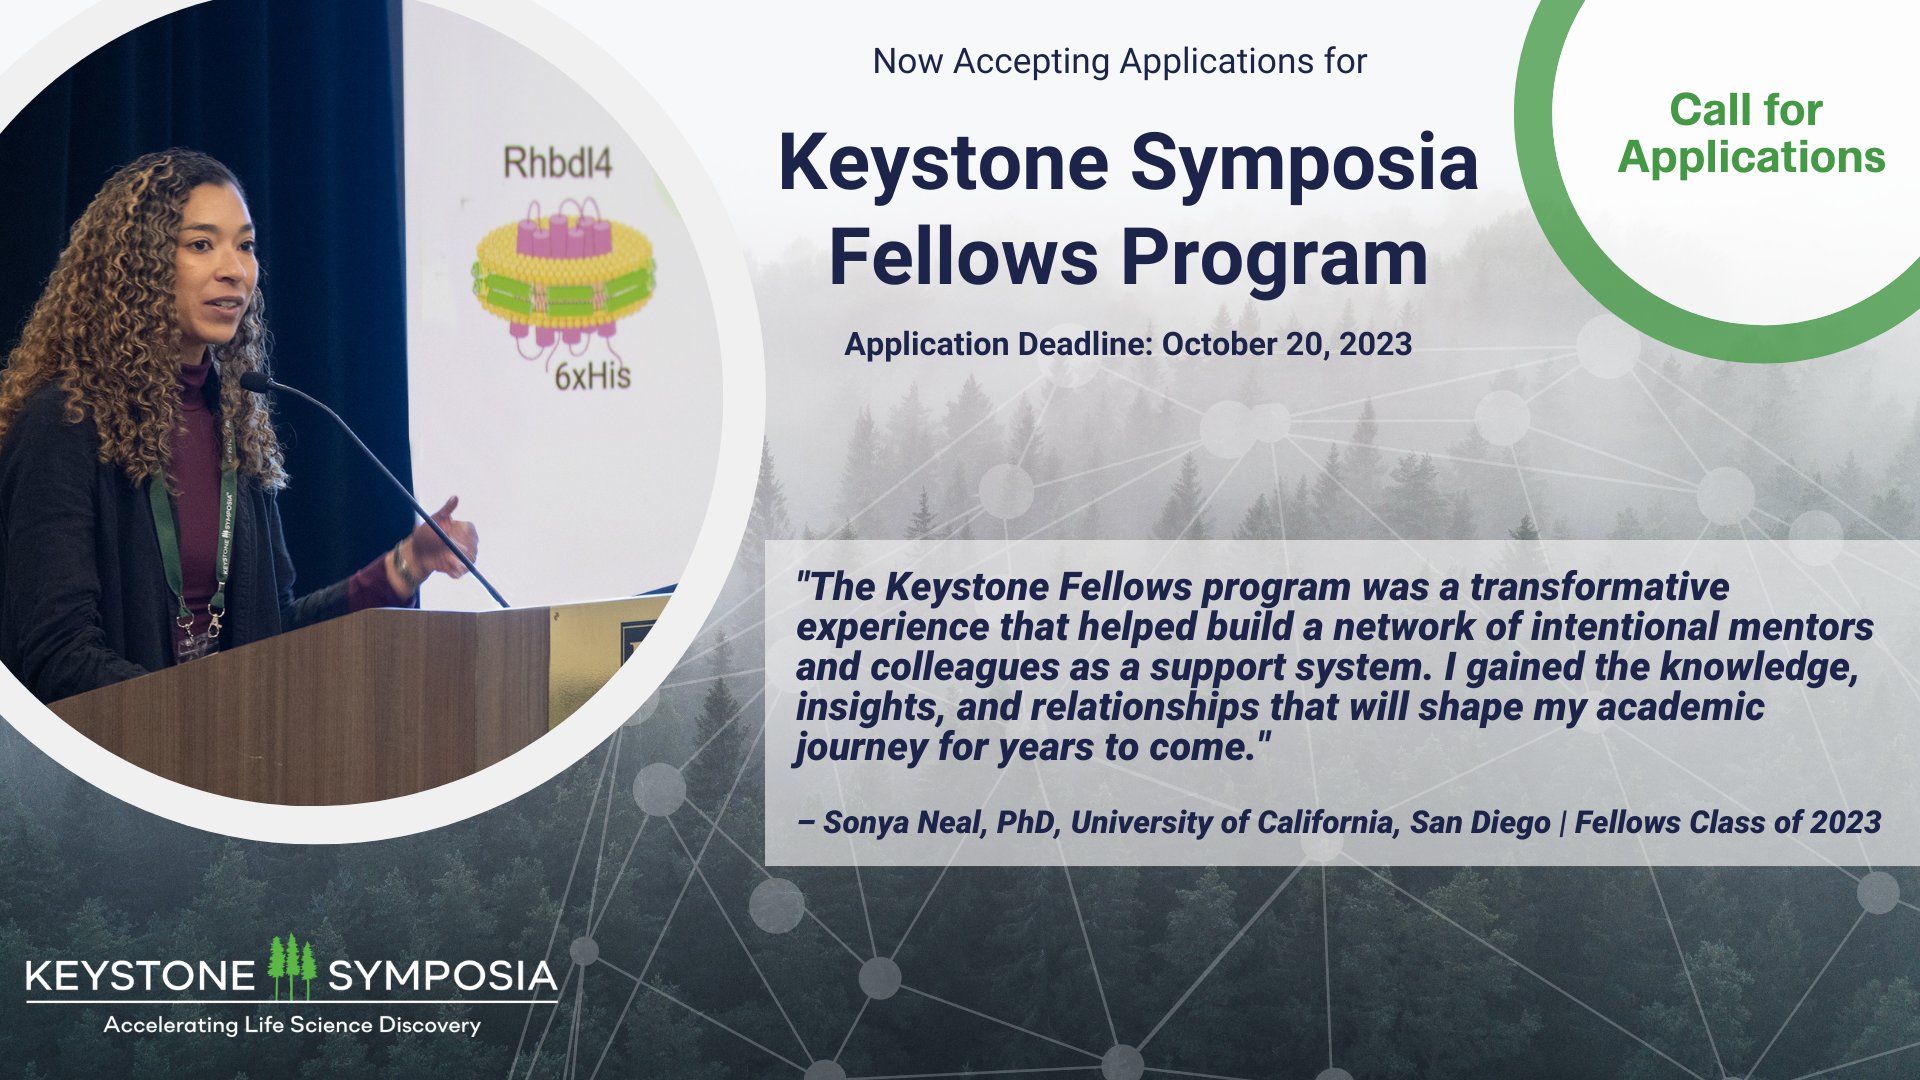 Why Keystone Symposia? 